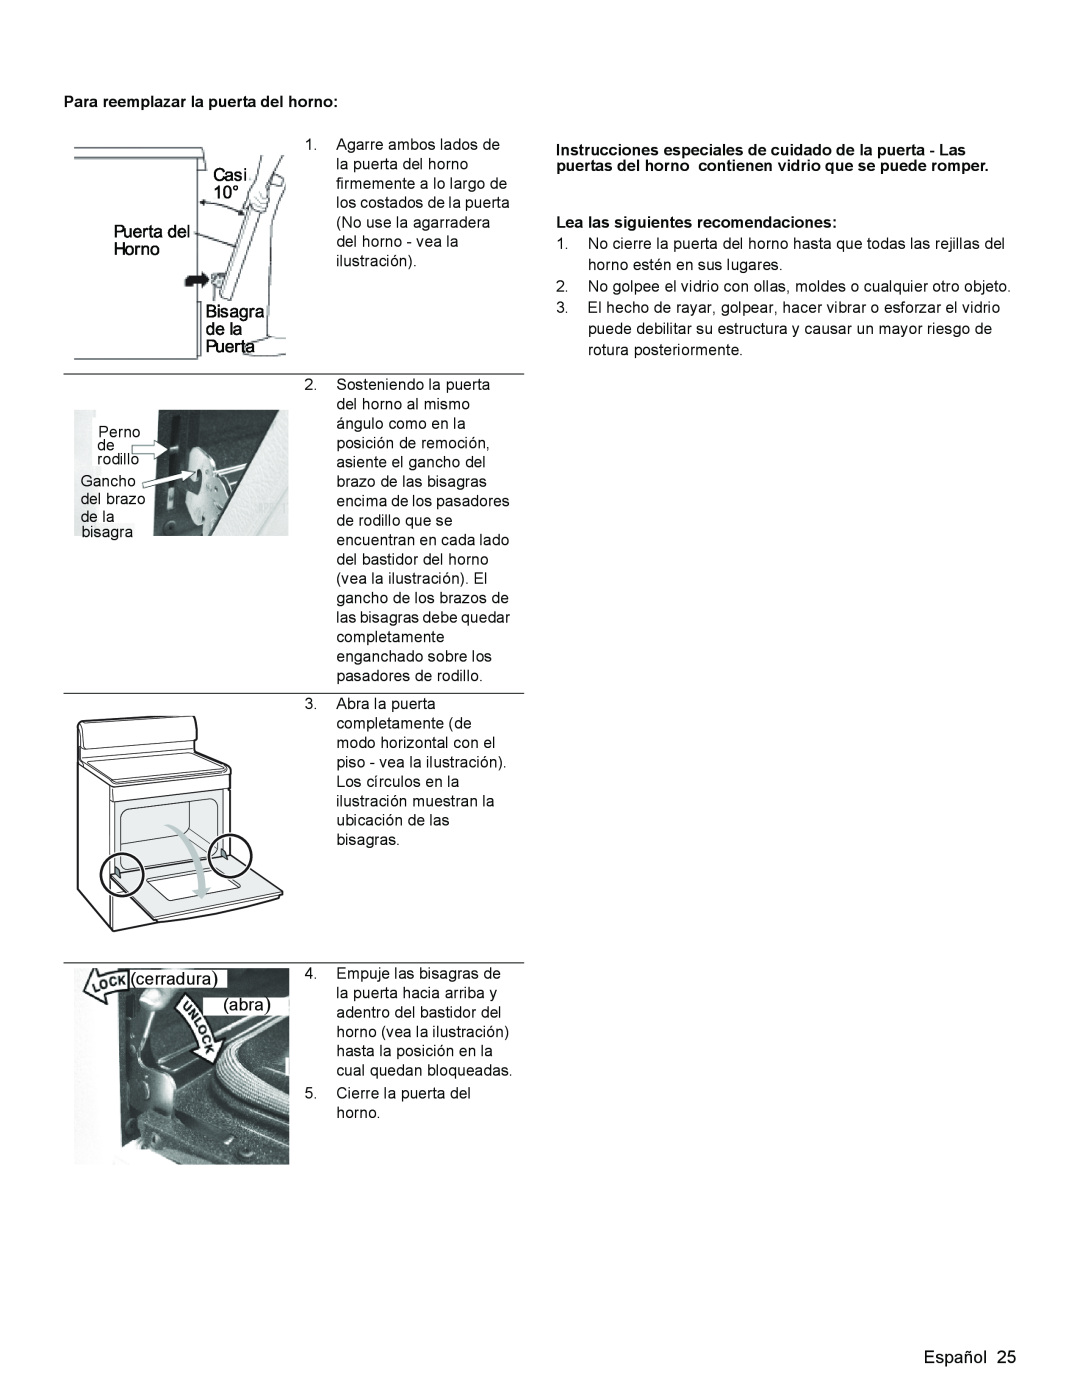 Bosch Appliances HGS3053UC manual cerradura abra, Español, Para reemplazar la puerta del horno 